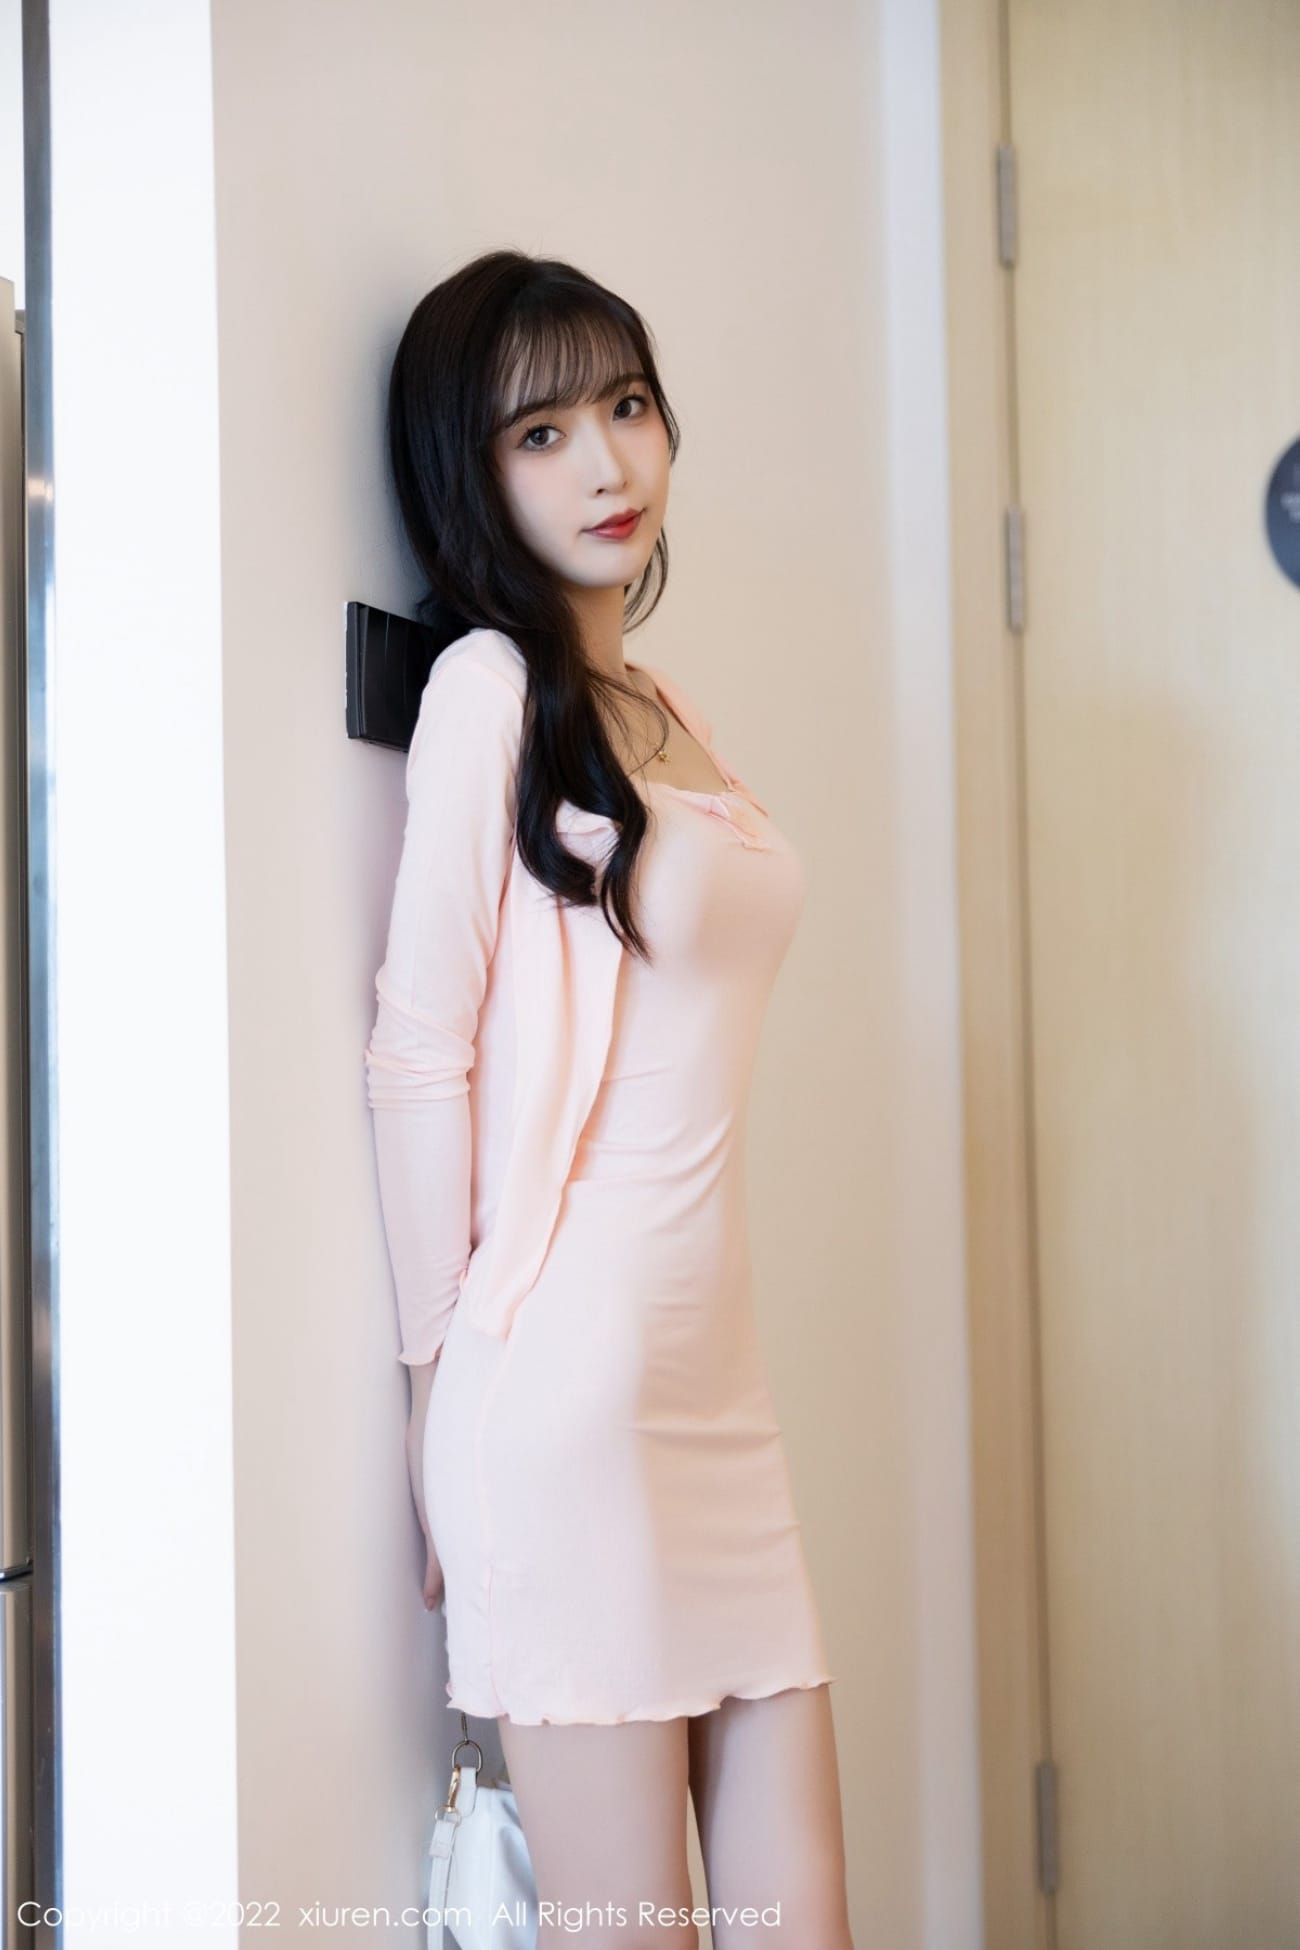 美女模特林星阑粉色服饰搭配高挑身材性感写真